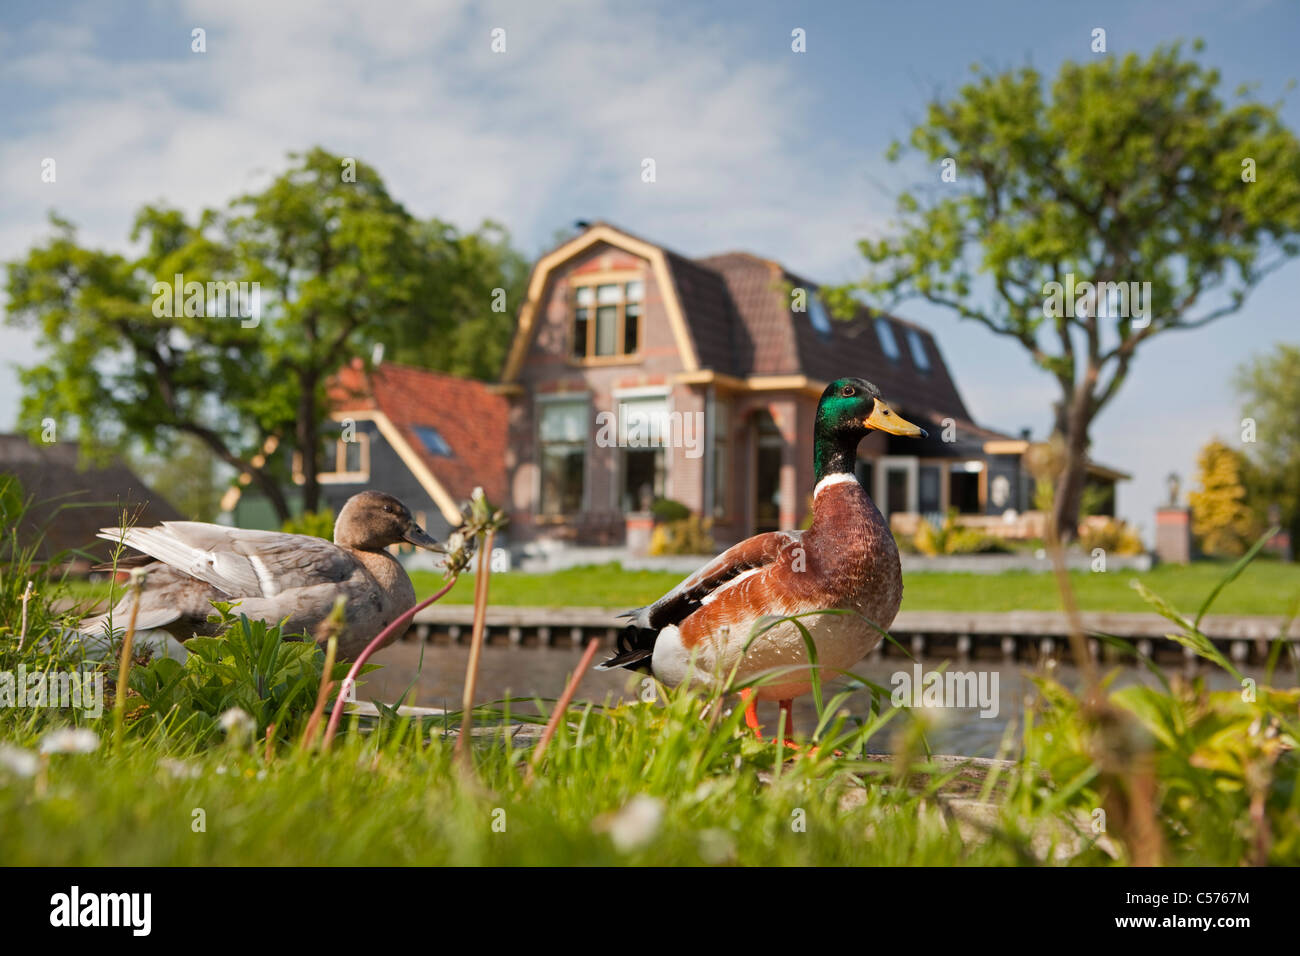 Die Niederlande, Giethoorn, Dorf mit fast nur Wasserstraßen. Enten. Stockfoto